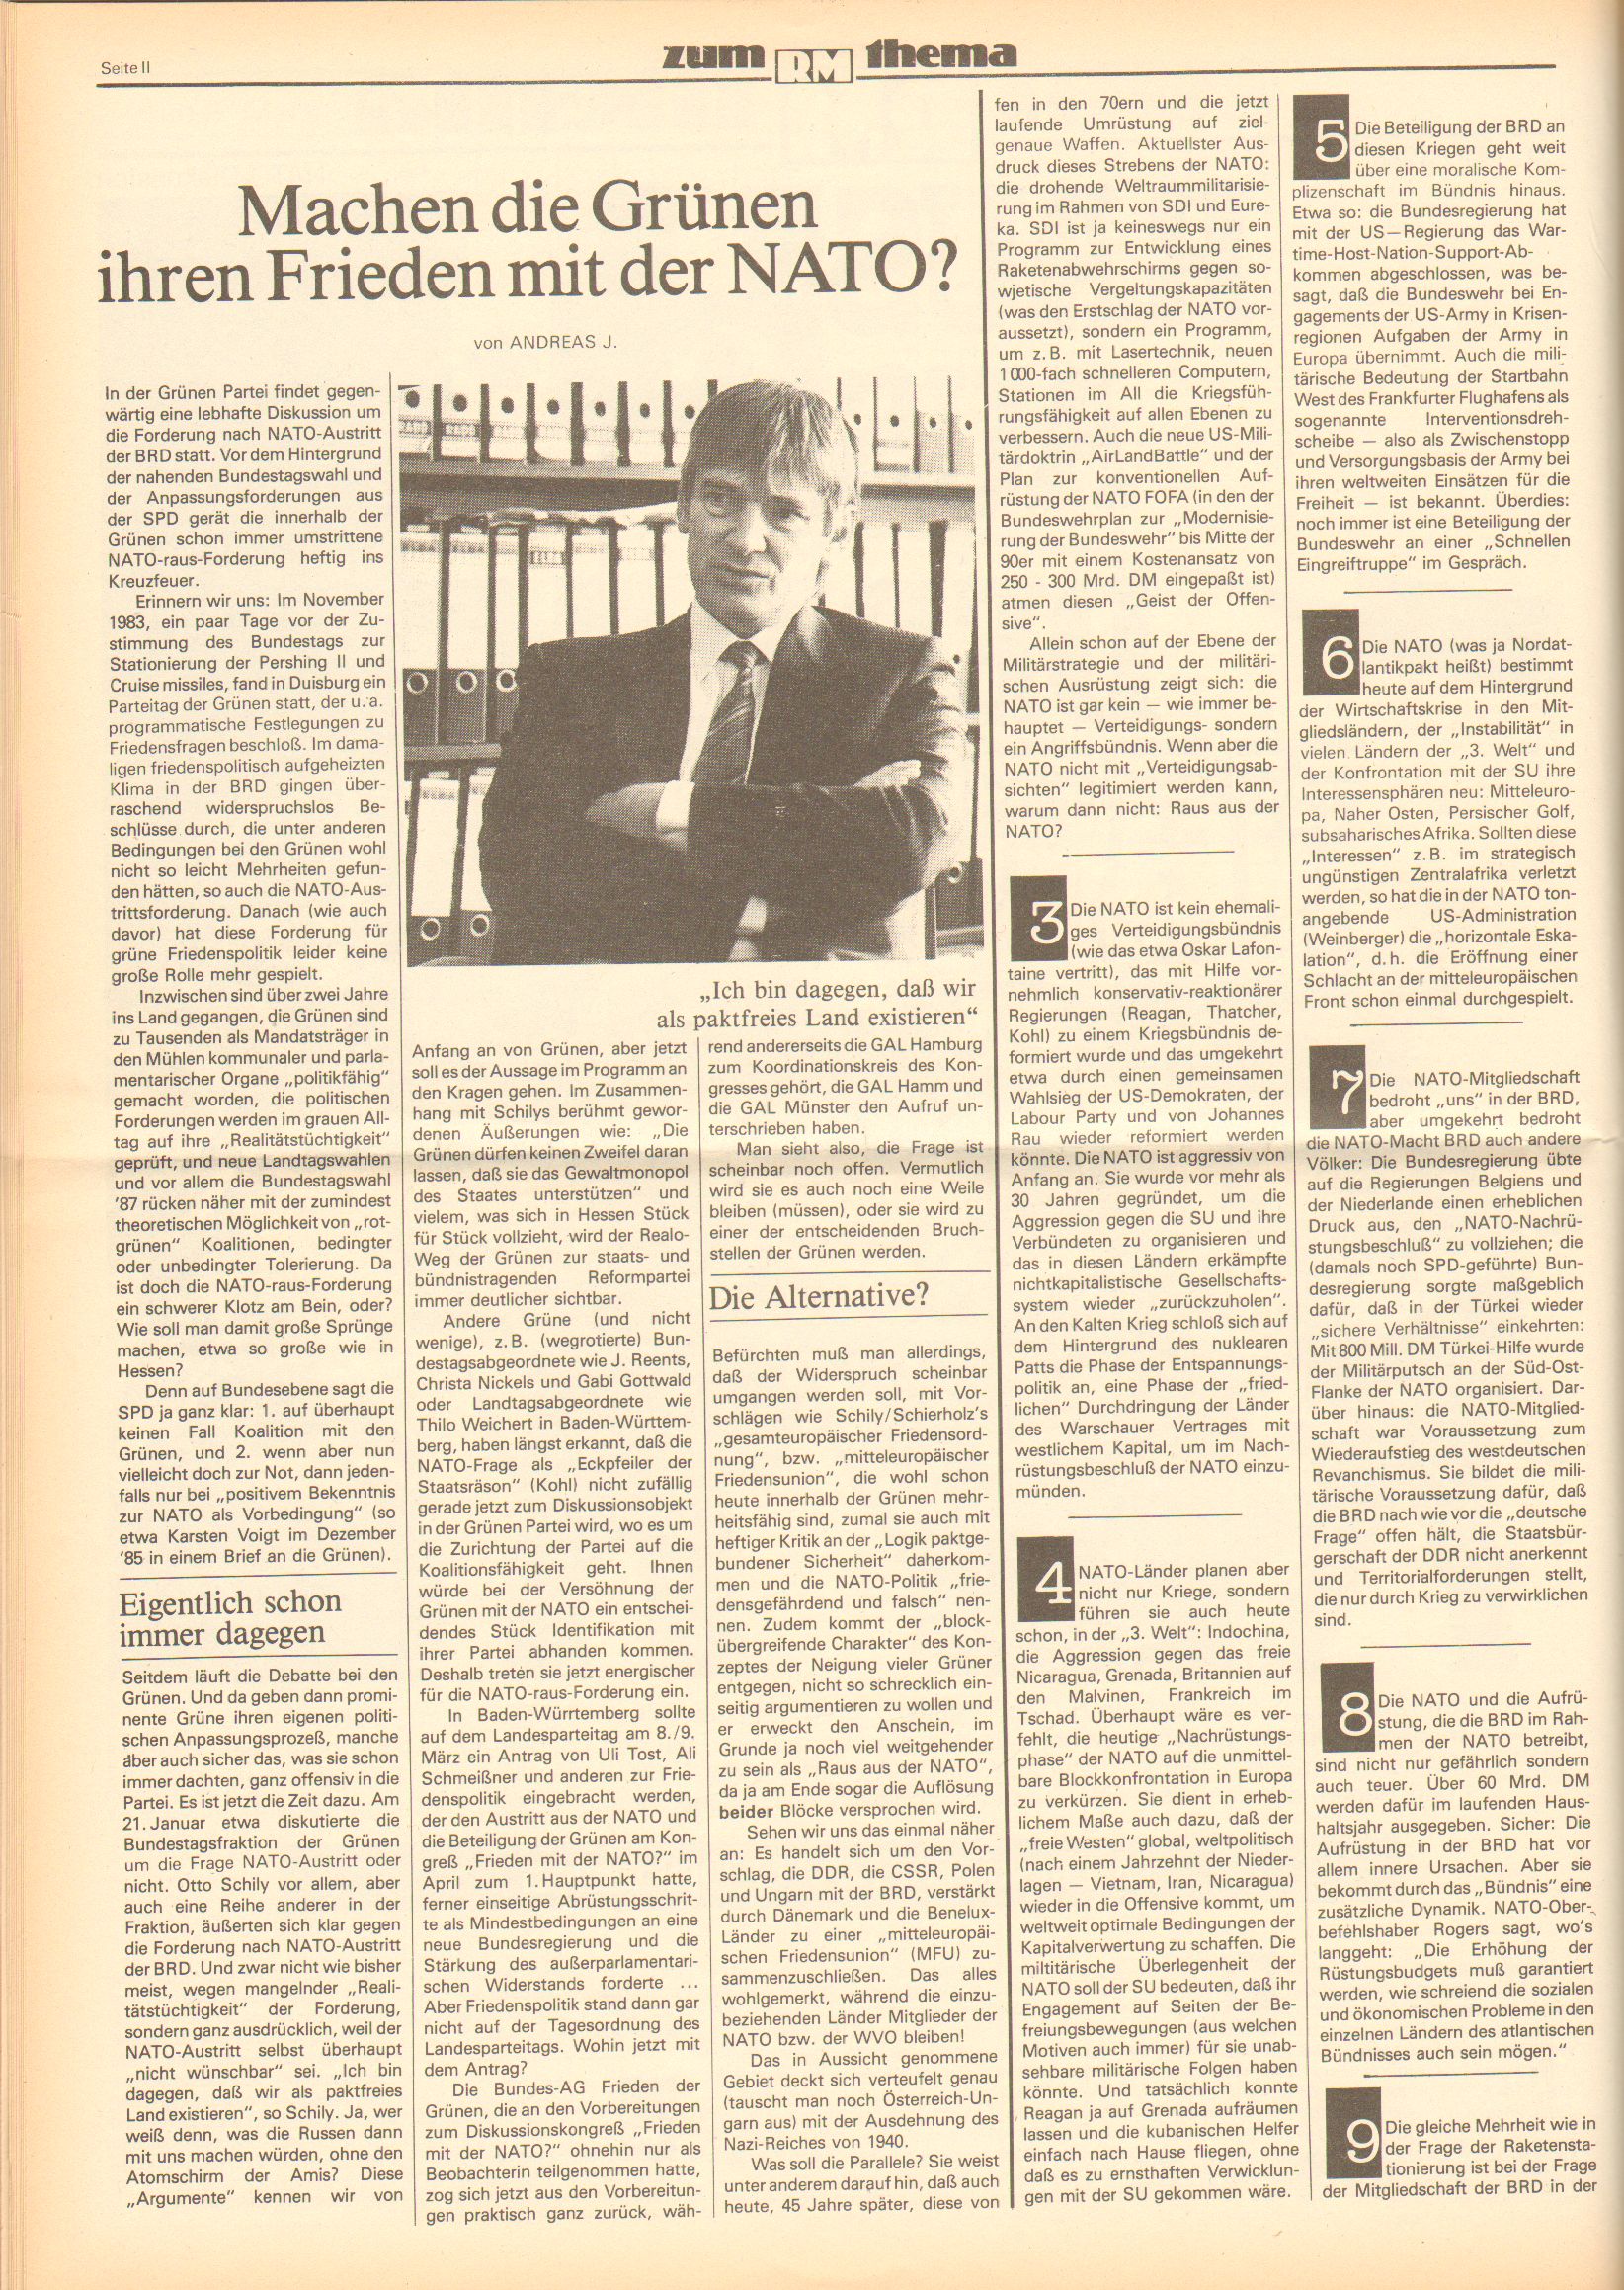 Roter Morgen, 20. Jg., 21. März 1986, Nr. 9, Seite 8